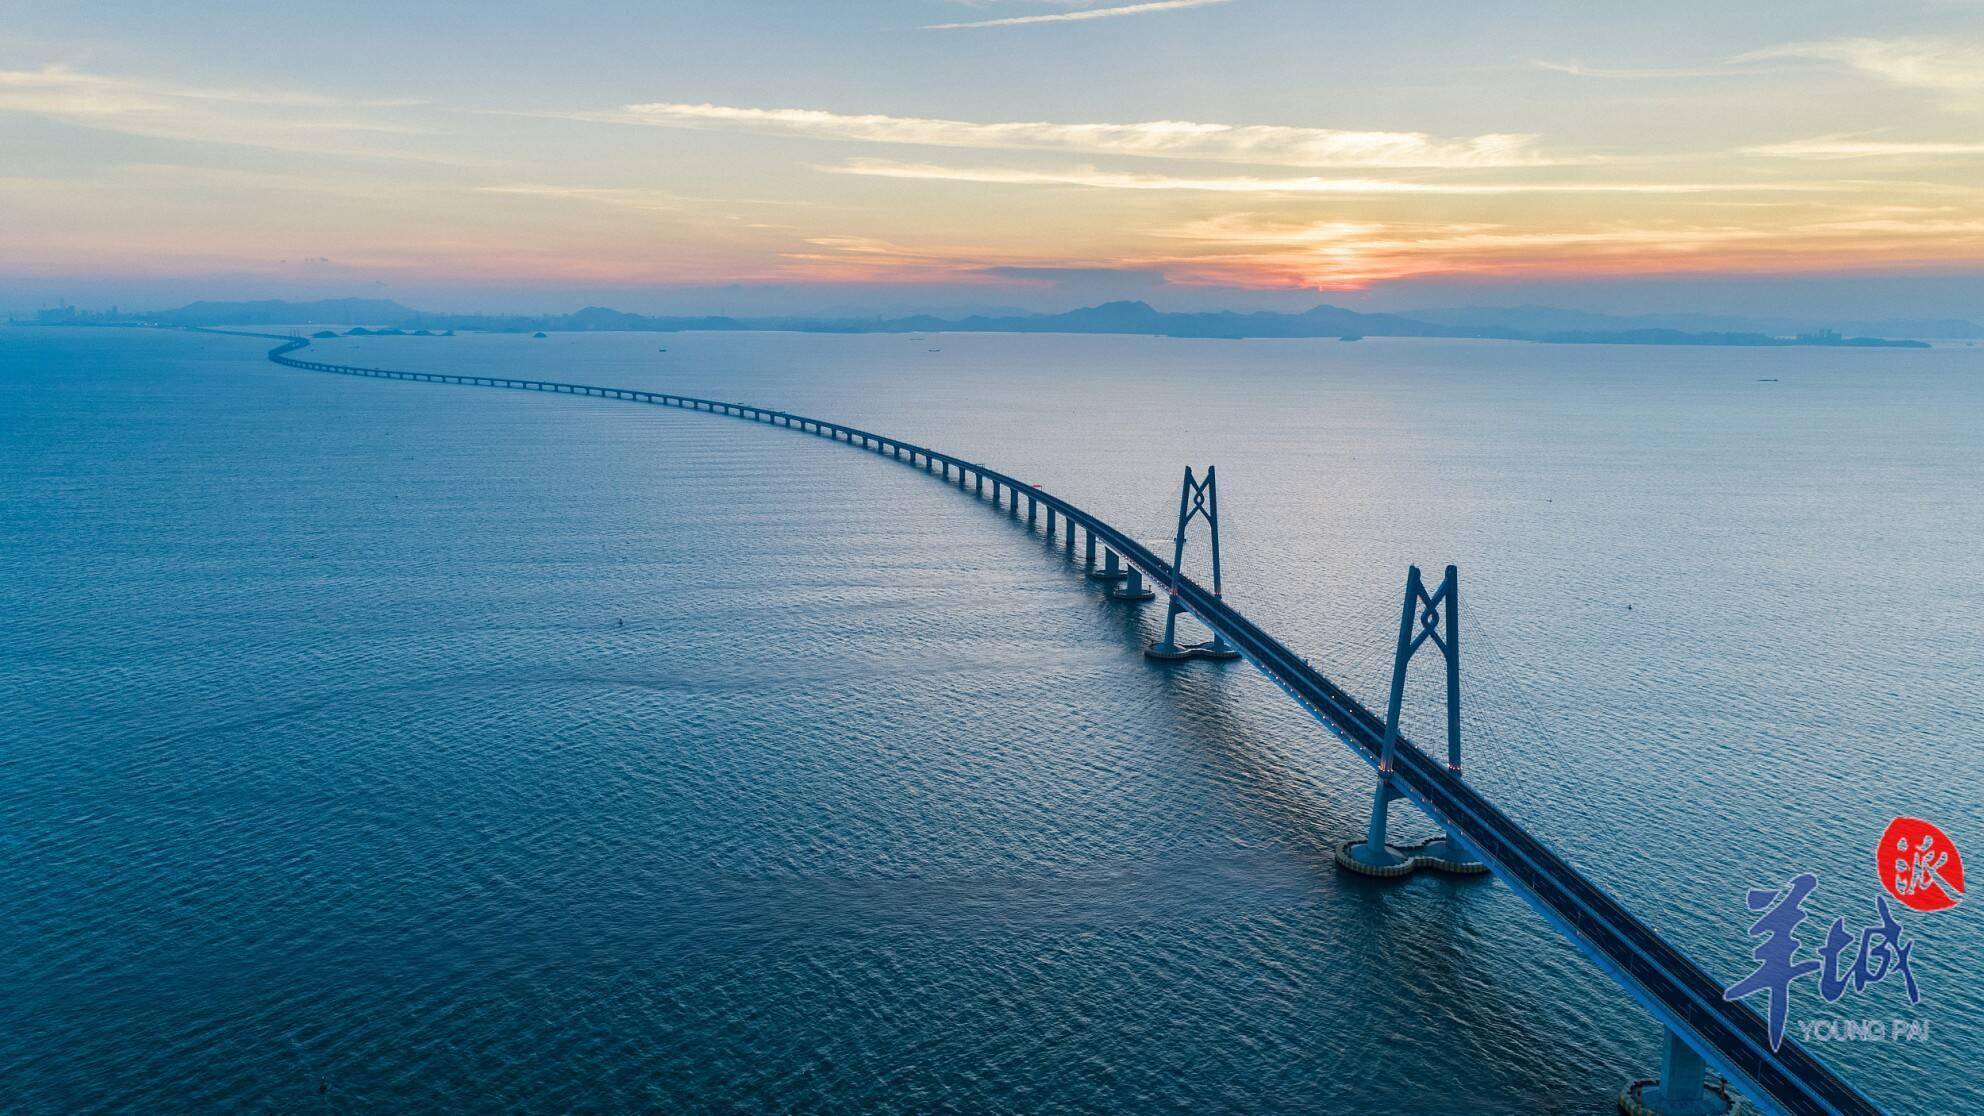 港珠澳大桥旅游试运营将于12月中旬开通,140分钟参观游览大桥蓝海豚岛